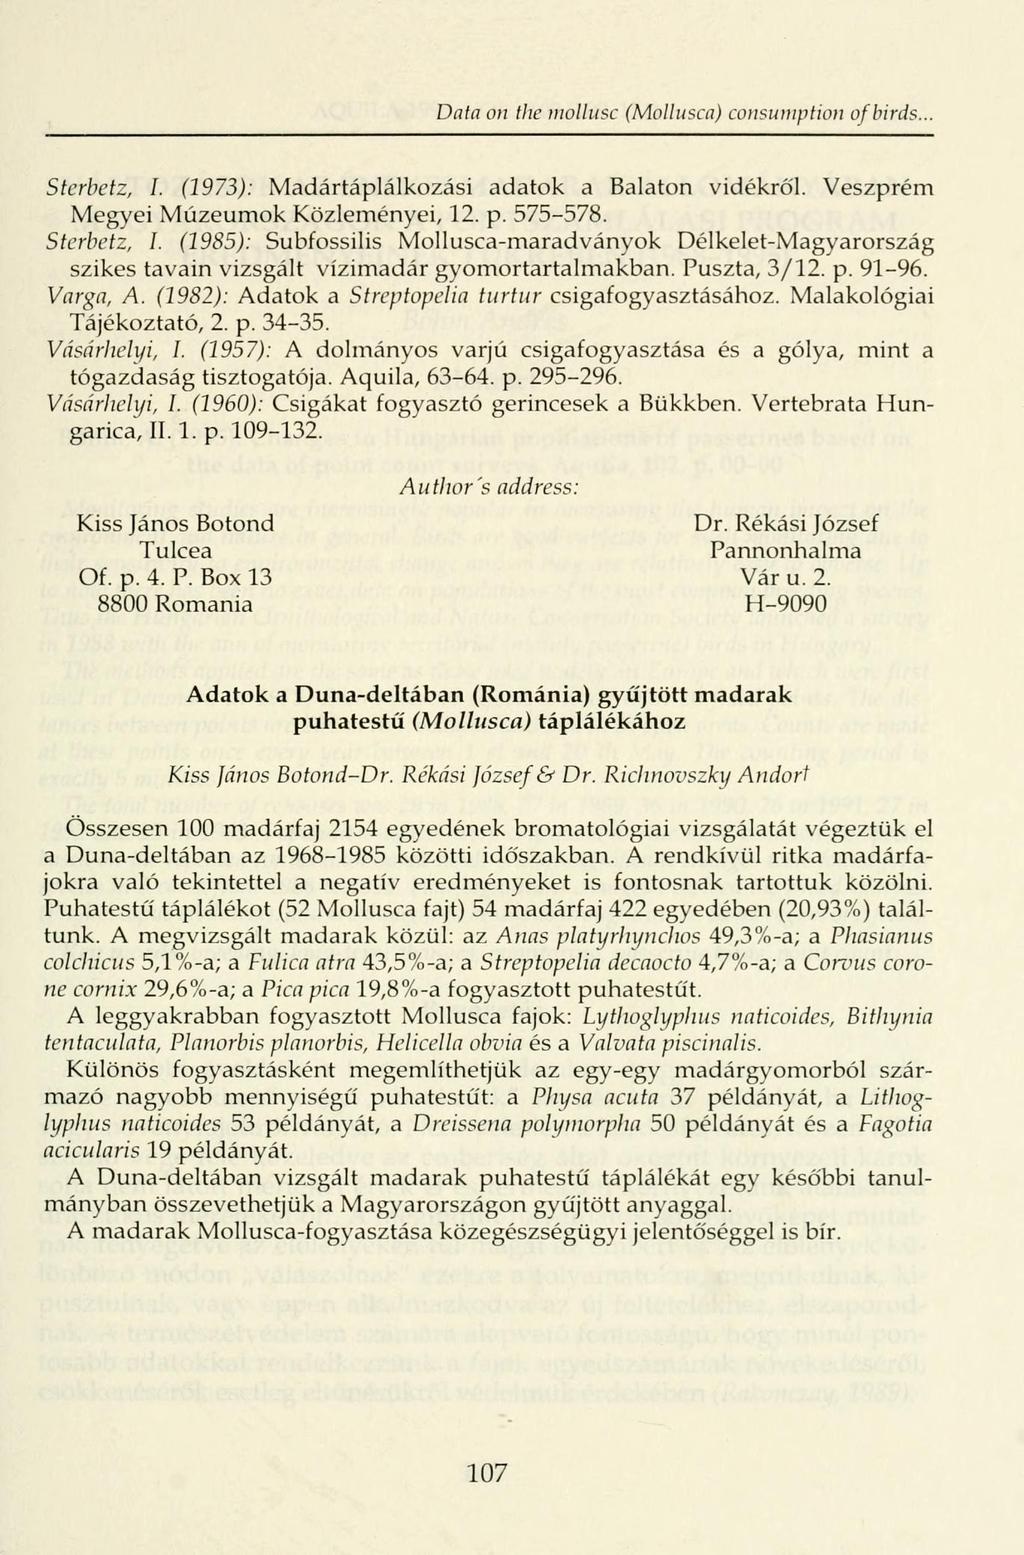 Data on tlw mollusc (Mollusca) consumption of birds. Sterbetz, I. (1973): Madártáplálkozási adatok a Balaton vidékről. Veszprém Megyei Múzeumok Közleményei, 12. p. 575-578. Sterbetz, I. (1985): Subfossilis Mollusca-maradványok Délkelet-Magyarország szikes tavain vizsgált vízimadár gyomortartalmakban.